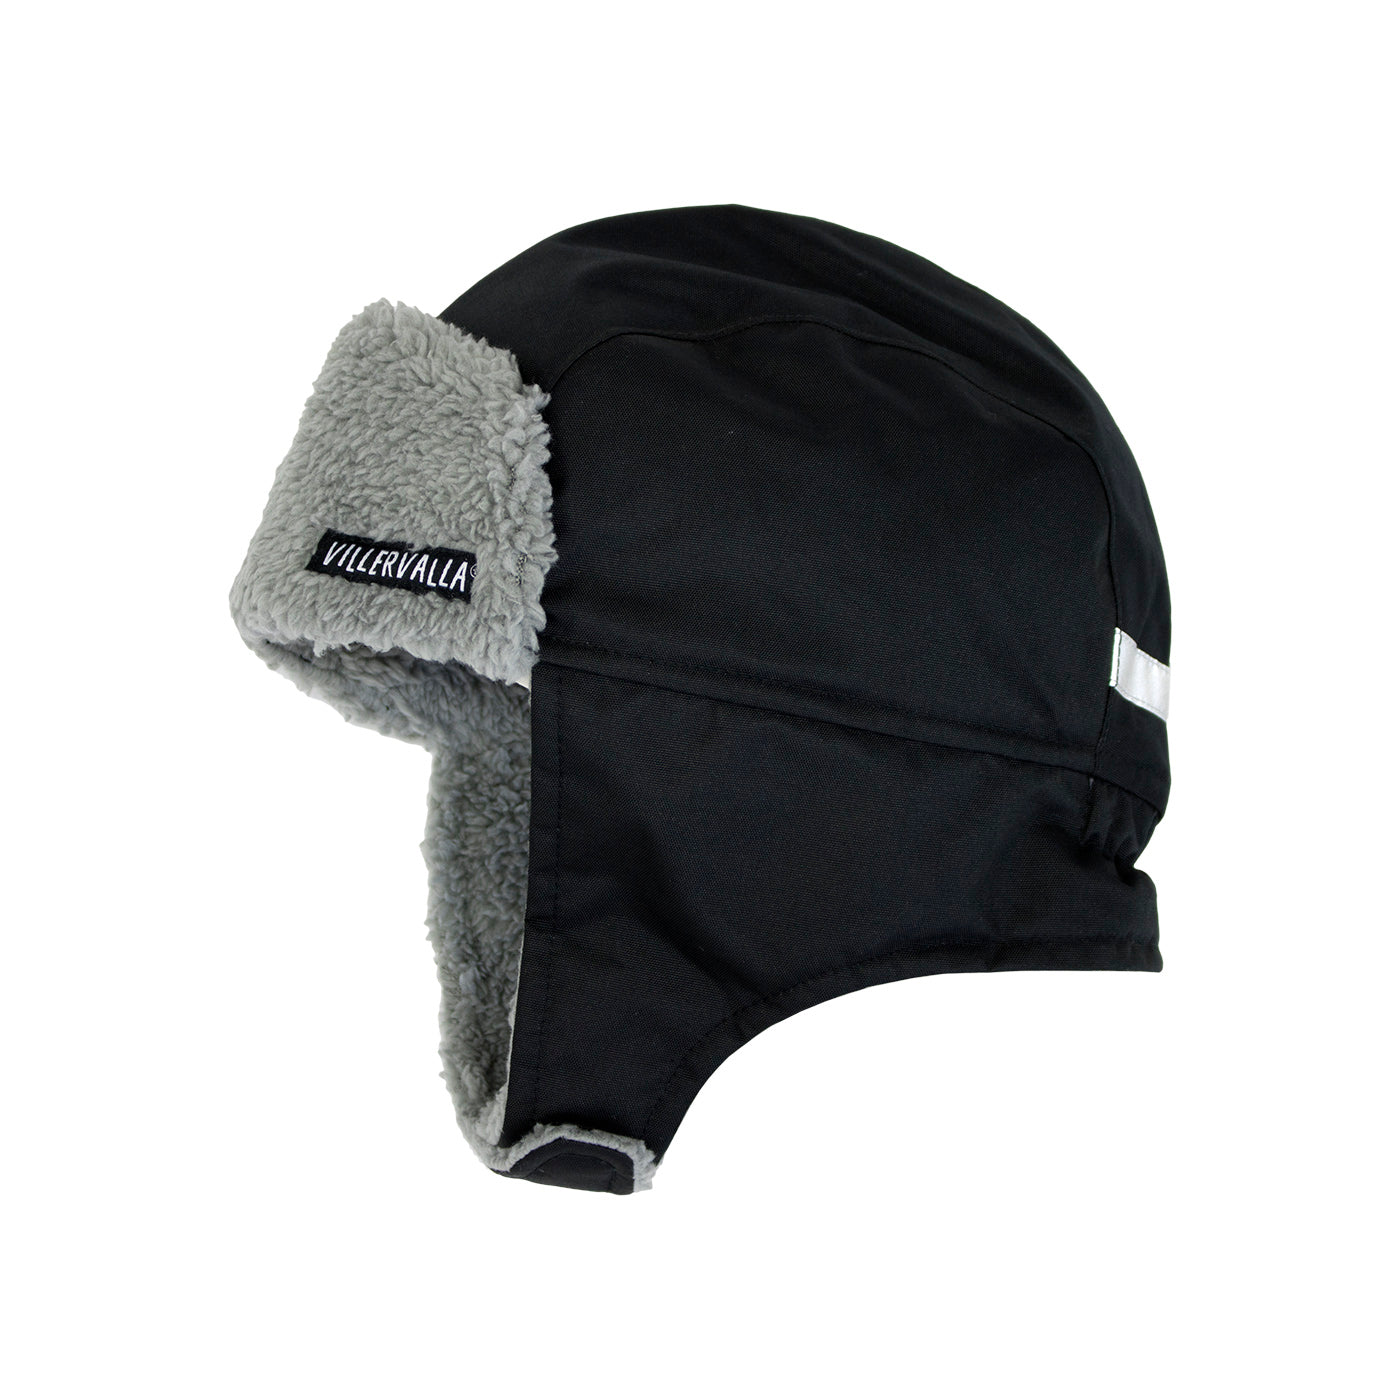 Night Winter Hat - 1 Left Size 2-4 years-Villervalla-Modern Rascals